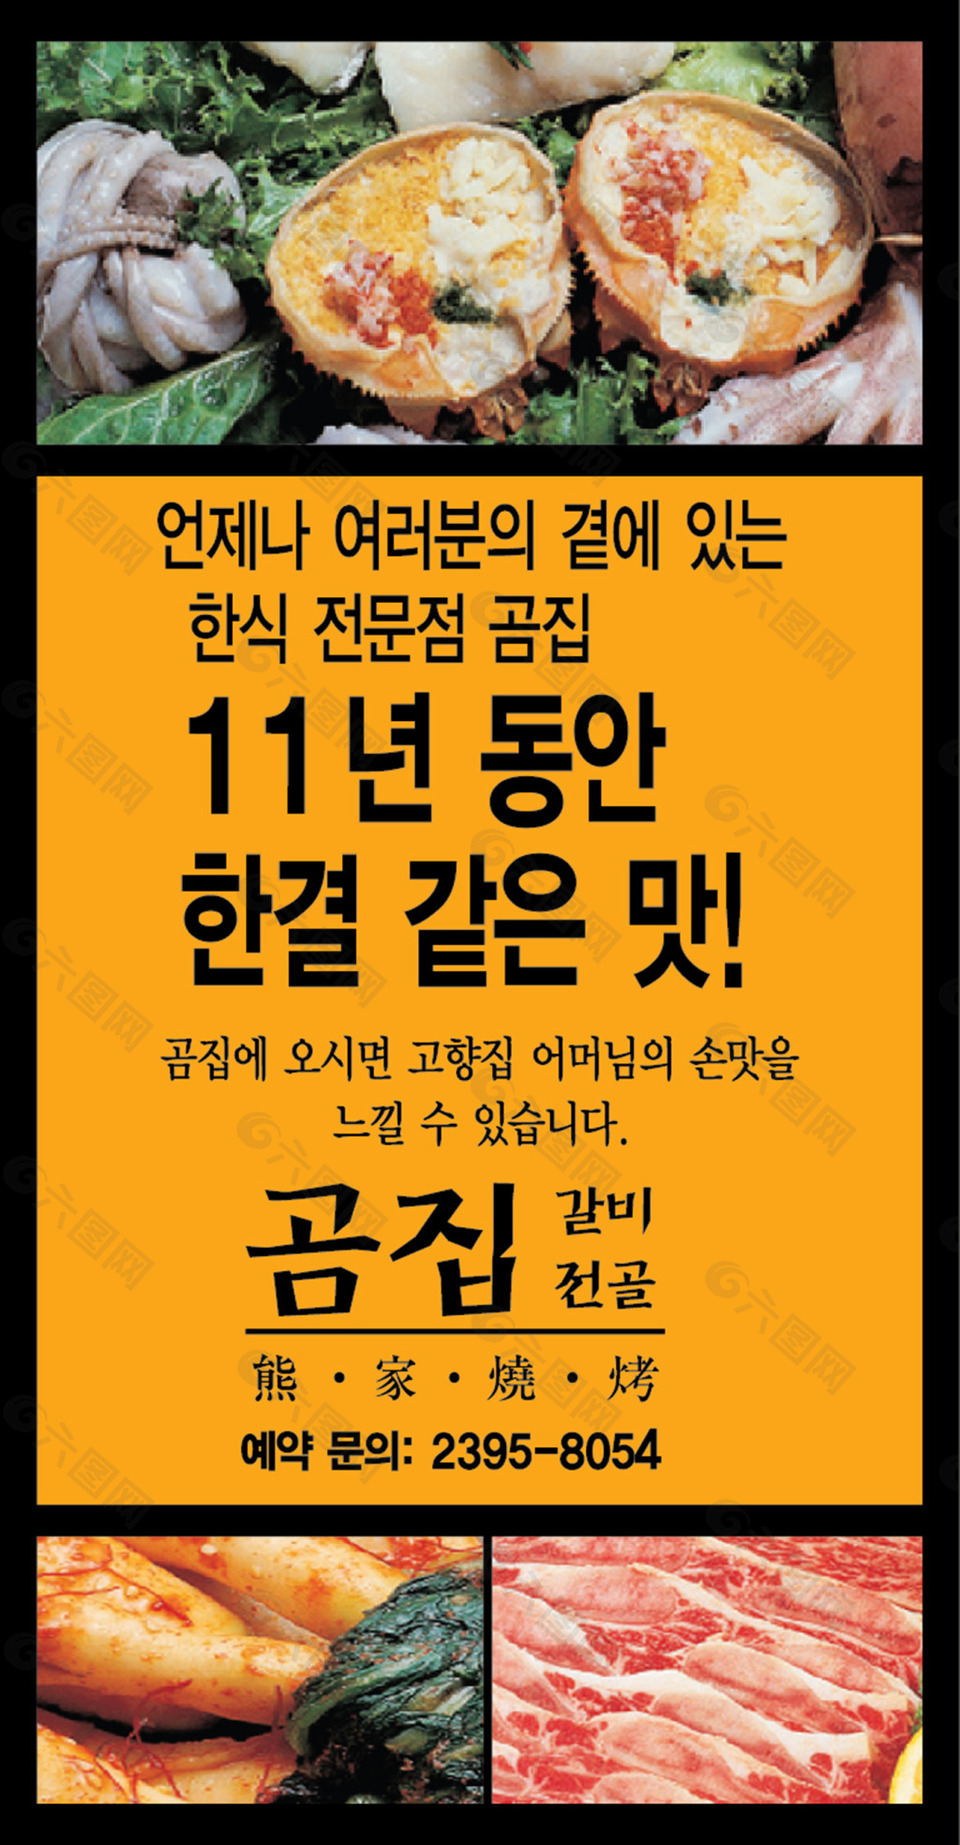 韩国饭店小广告